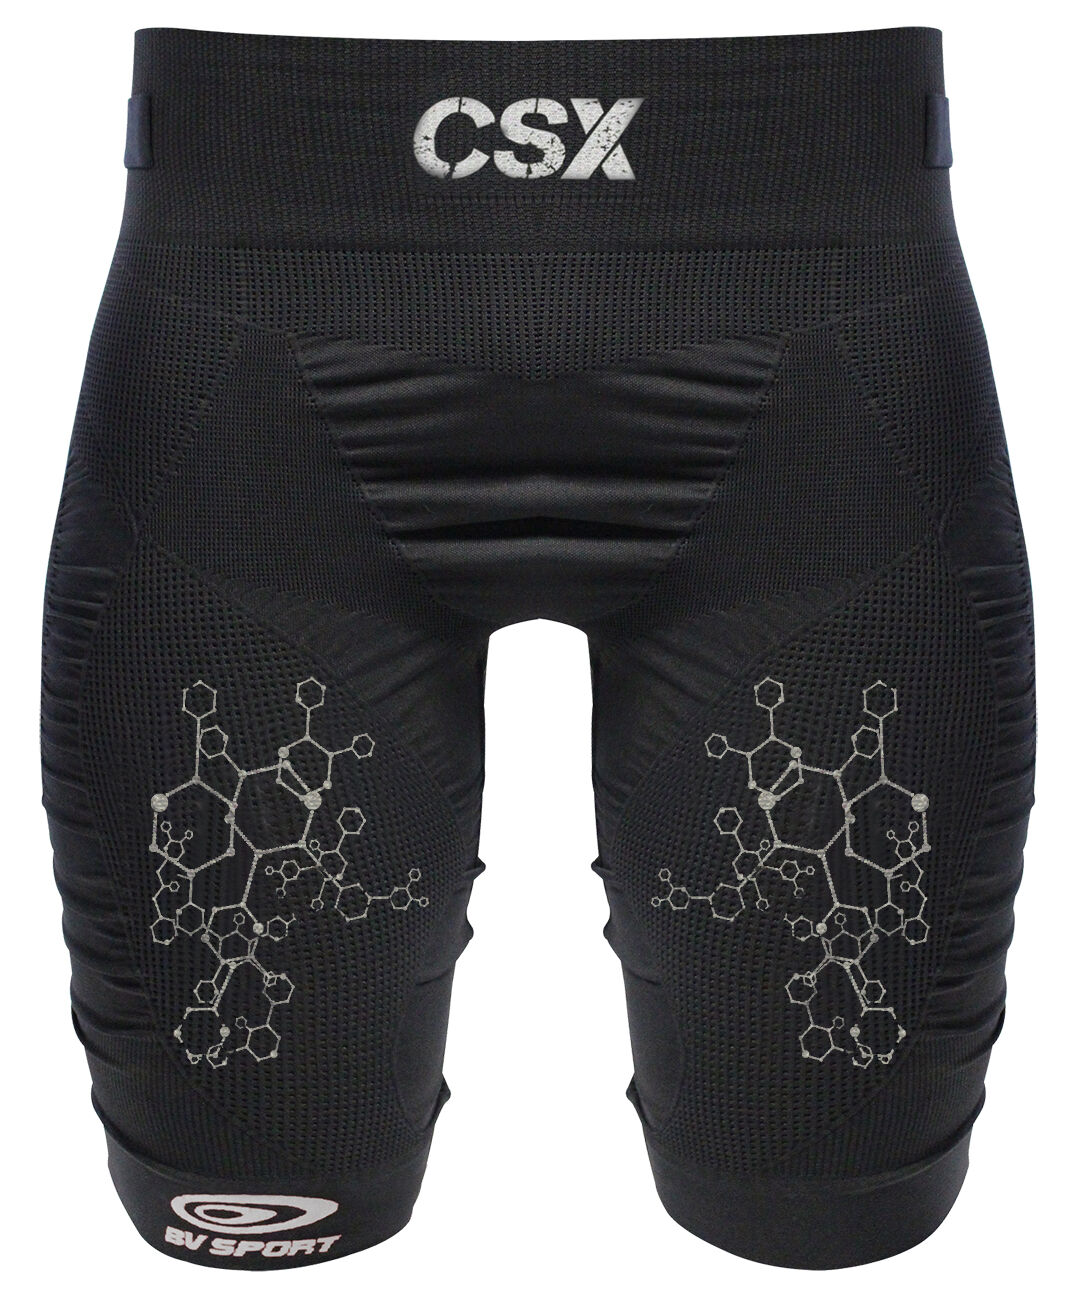 BV Sport - CSX Pro - Running shorts - Men's